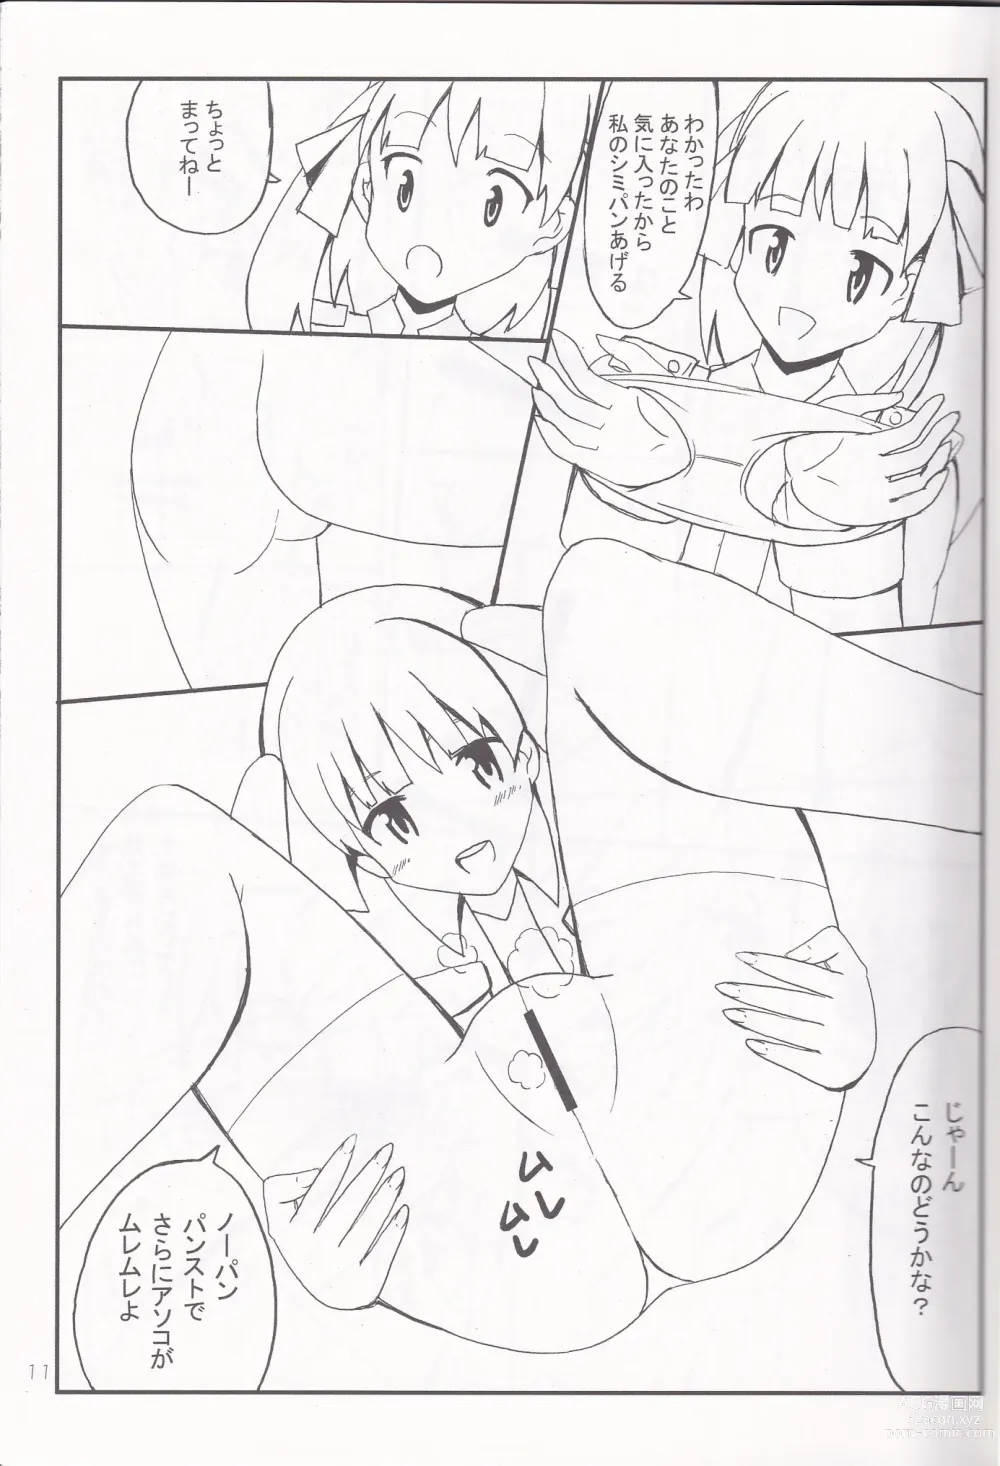 Page 10 of doujinshi Ashi no Ura